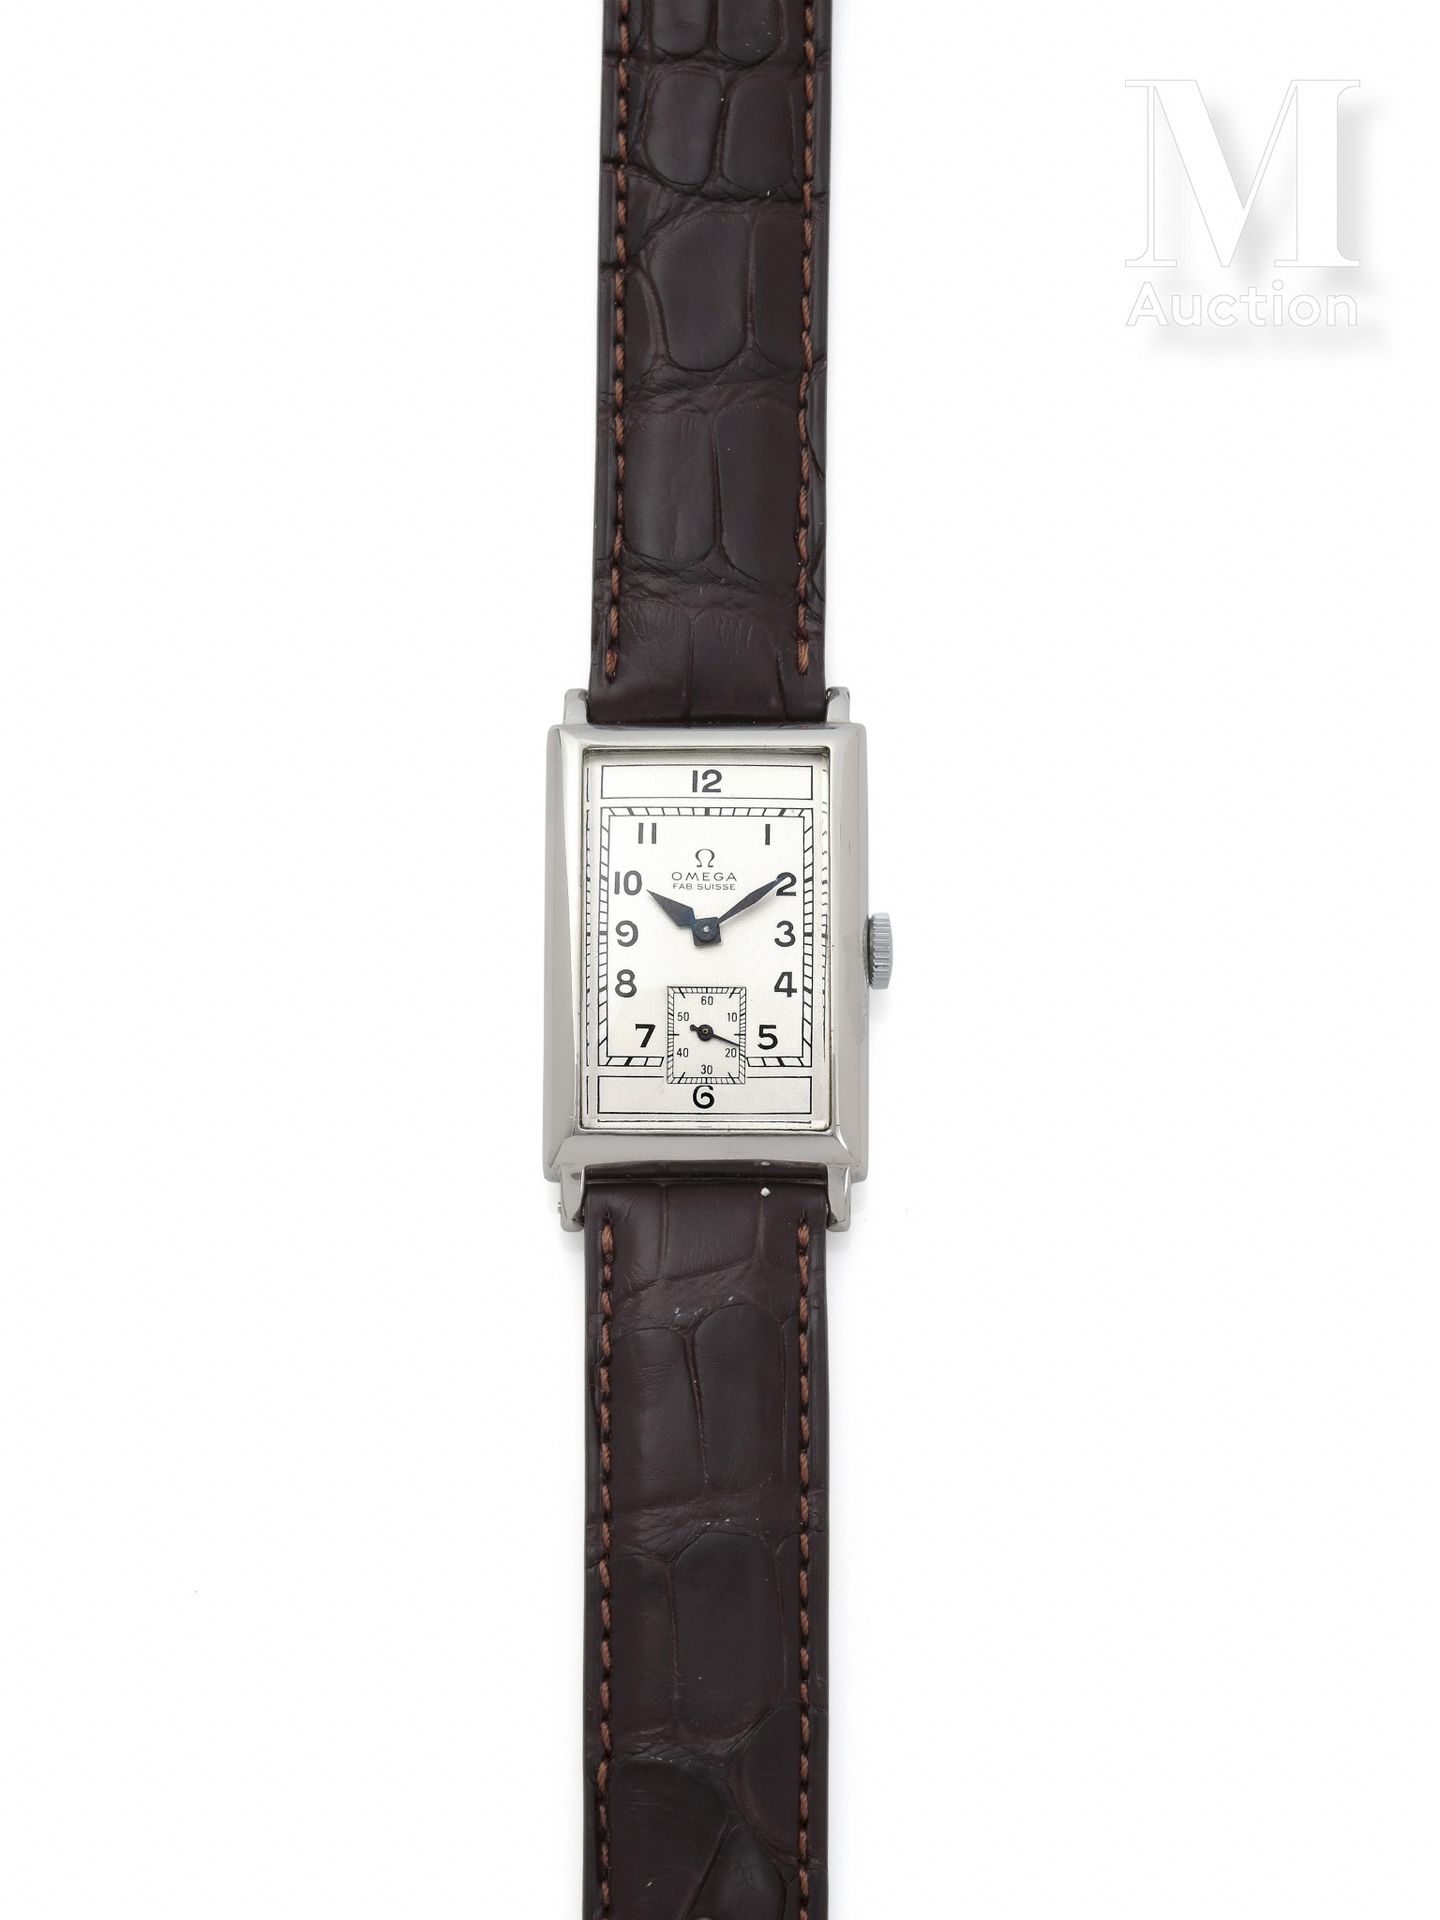 OMEGA Alrededor de 1940

Reloj rectangular de acero para hombre muy elegante 

E&hellip;